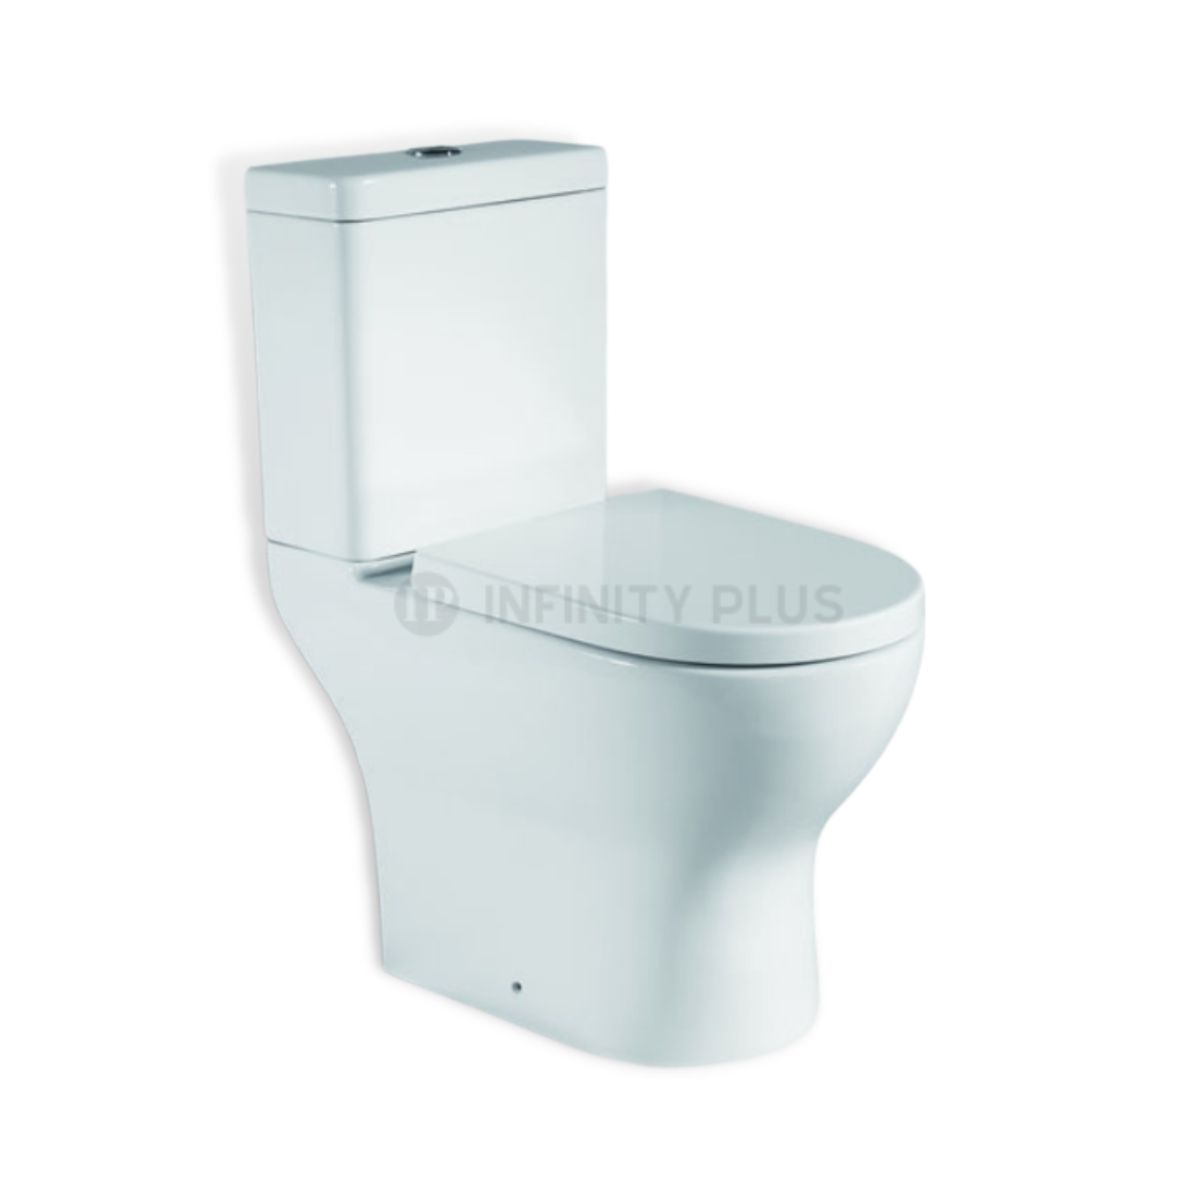 The best valued toilet skew pan in Bayswater from Infinity Plus Bathrooms